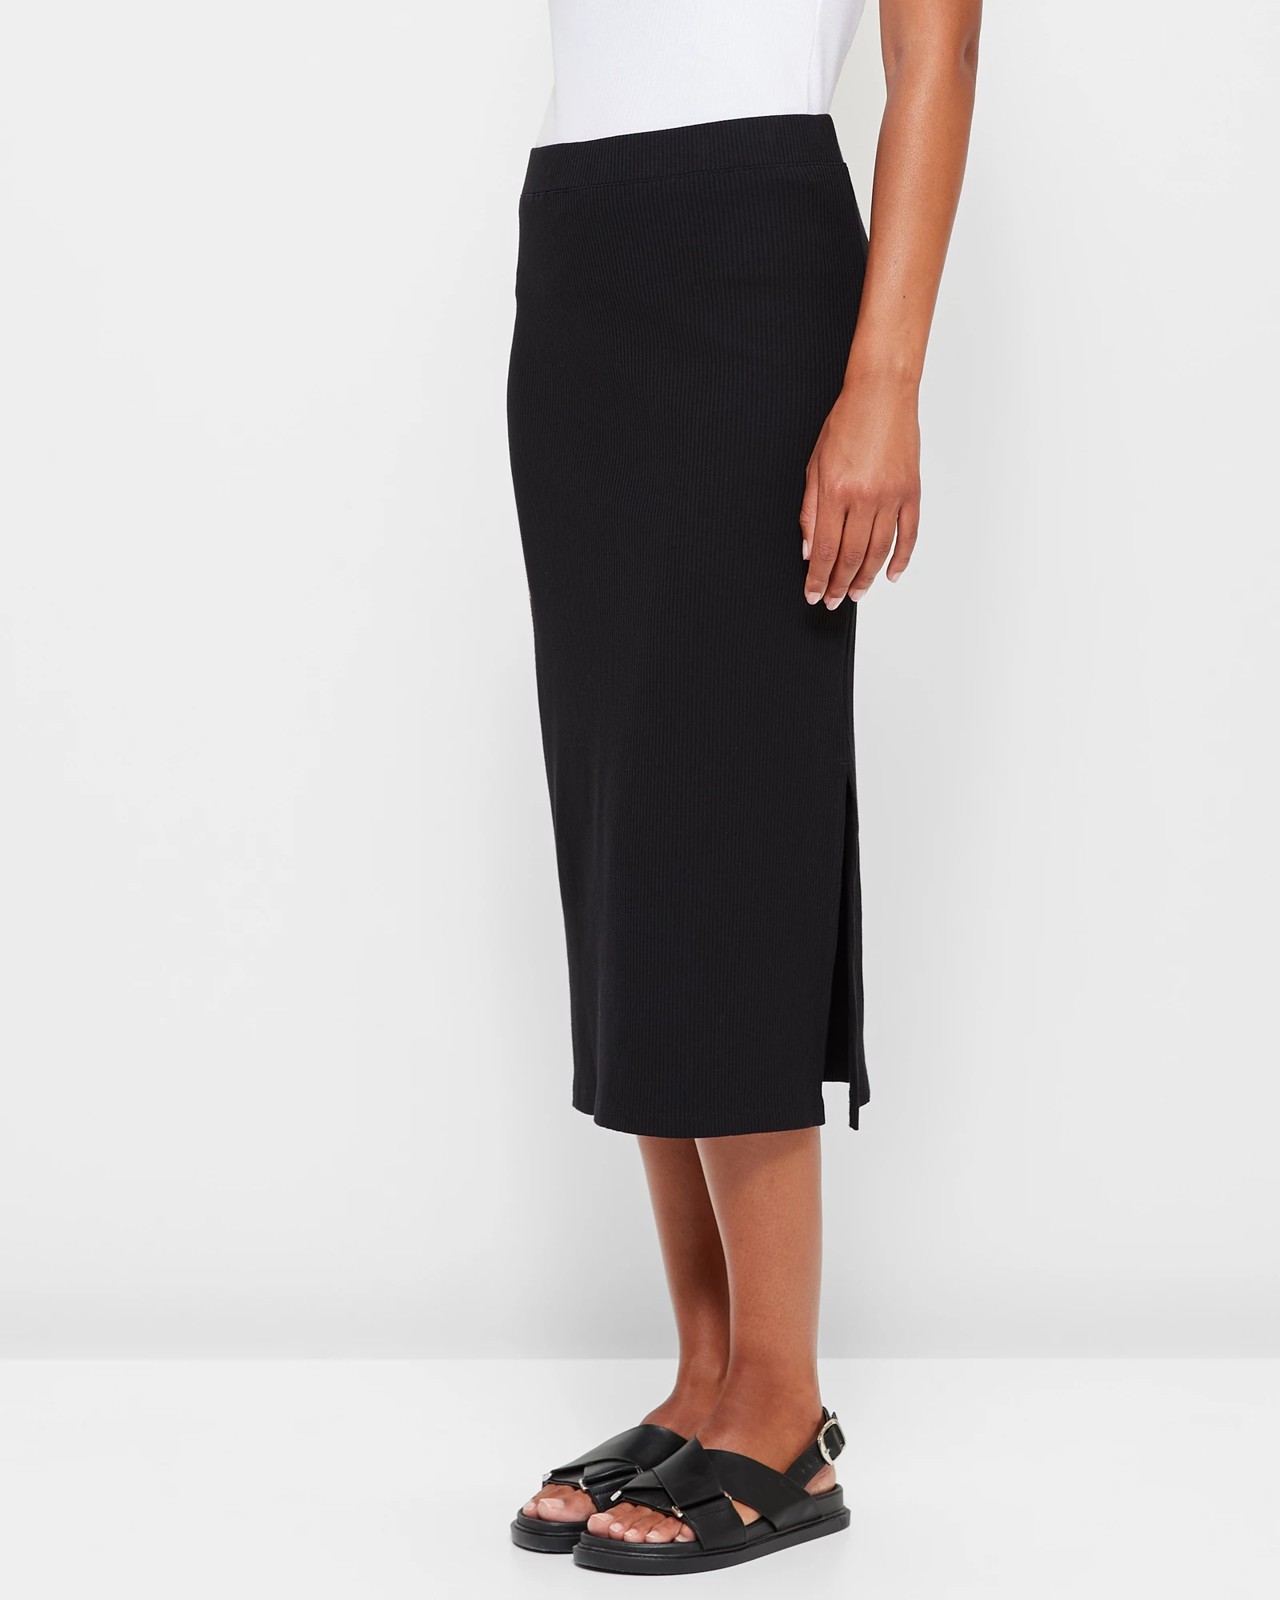 Ribbed Skirt - Black | Target Australia